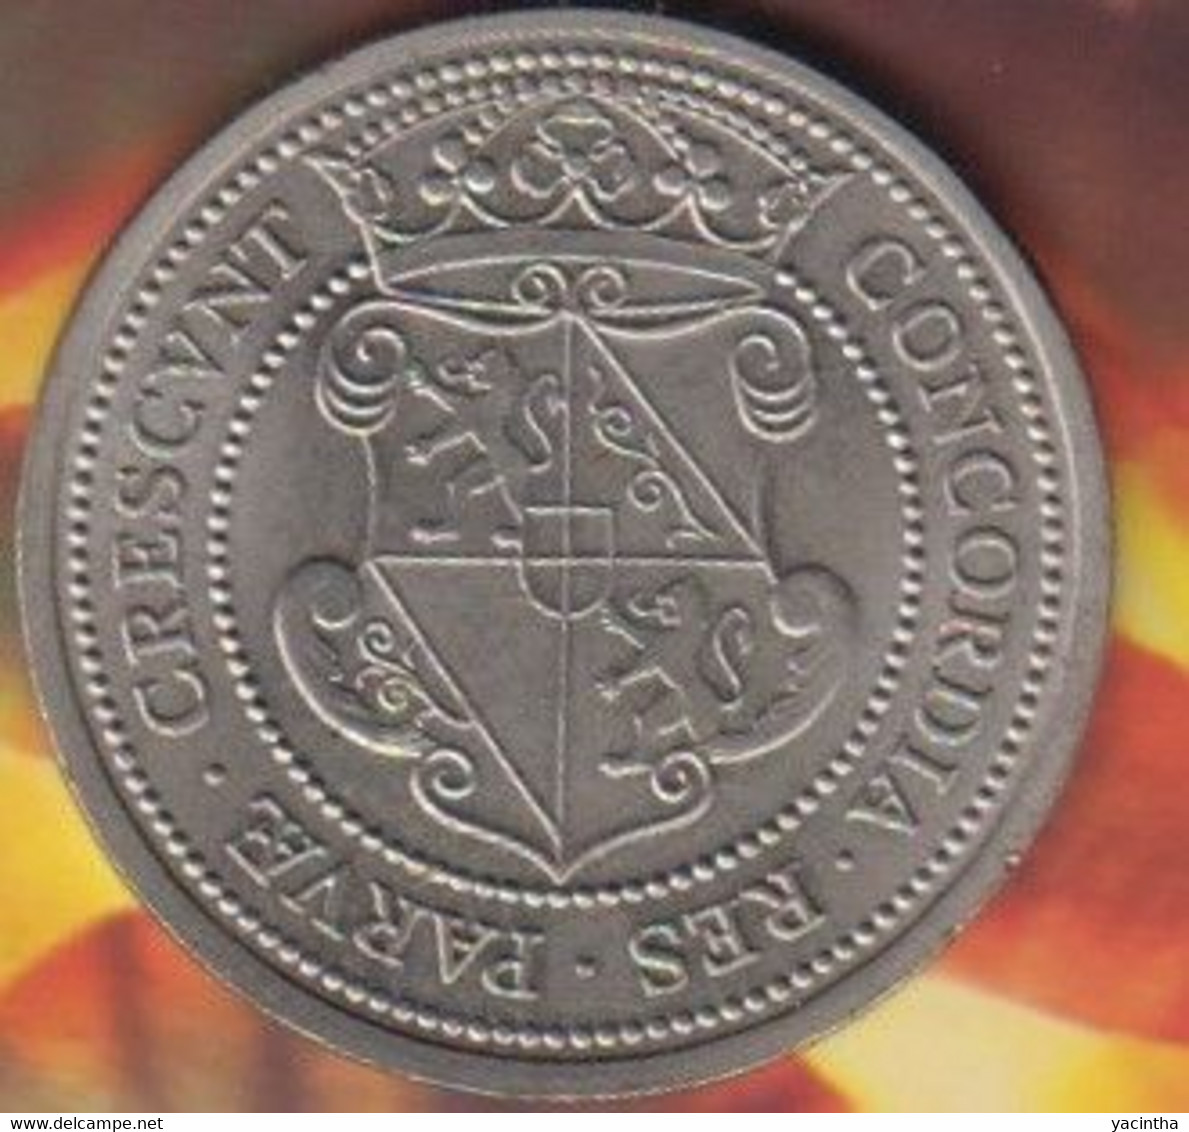 1 Unie Daalder  . Unie Van Utrecht  1979      (1008) - Souvenir-Medaille (elongated Coins)